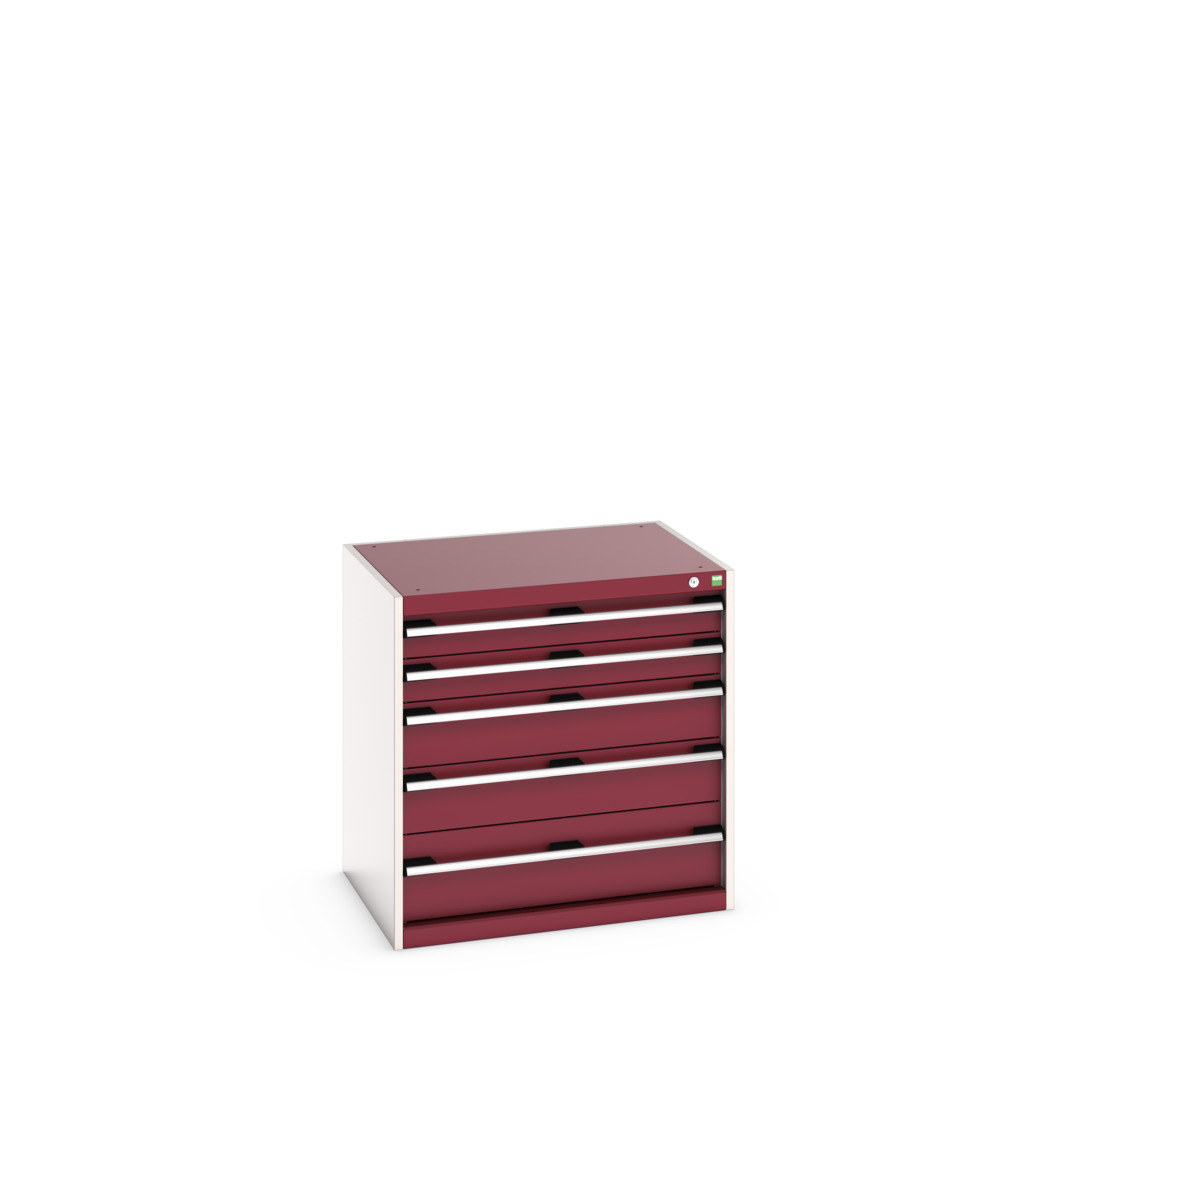 40020025.24V - cubio drawer cabinet